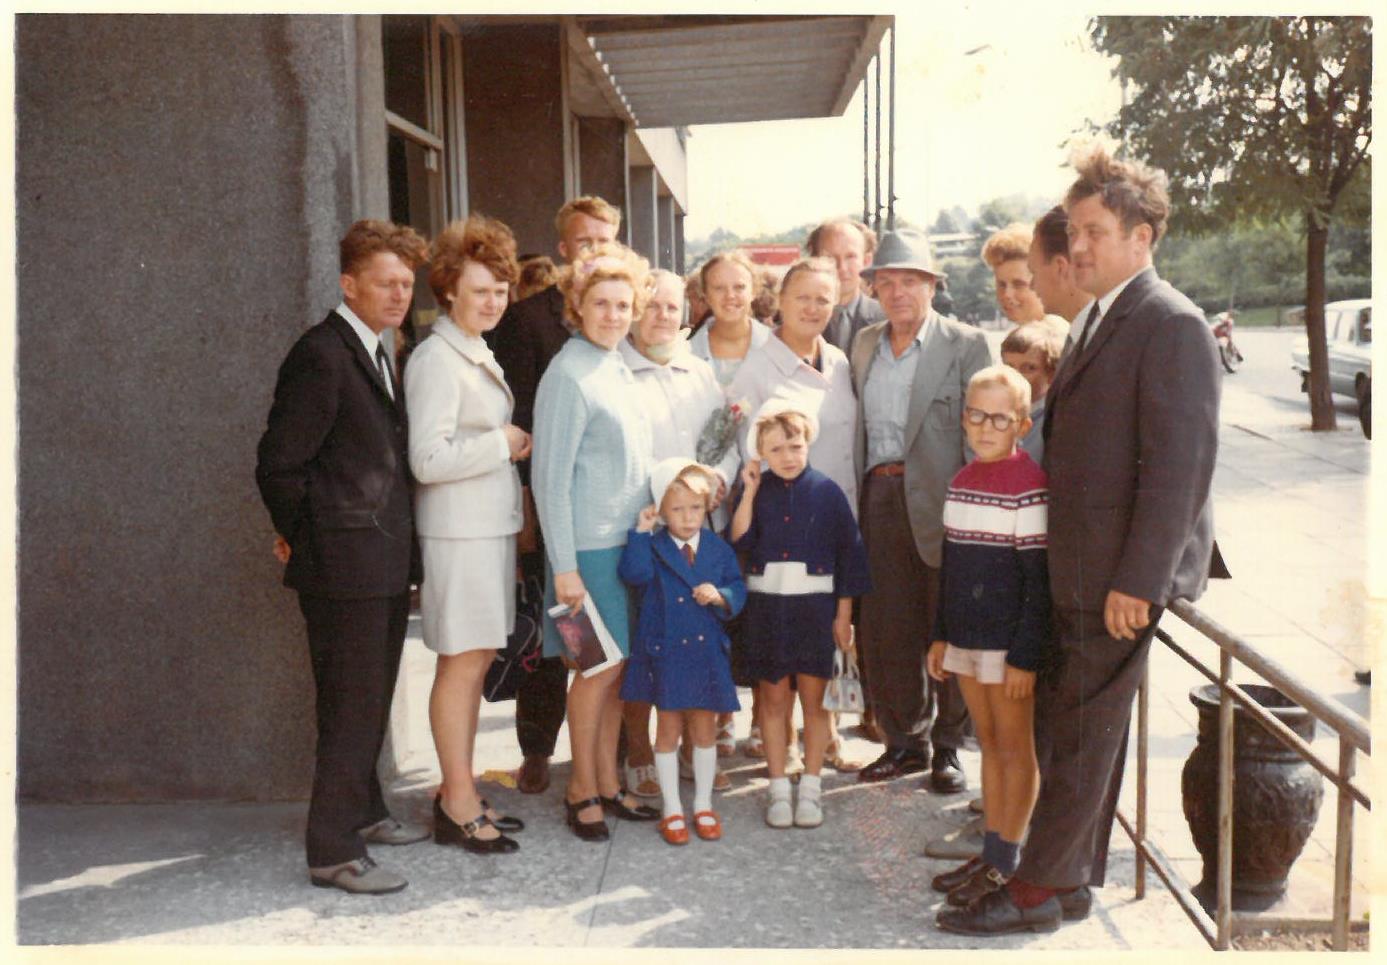 Pirmasis Kazio Balčiūno vizitas Lietuvoje. K. Balčiūnas (centre, su kepure) su ilgai nematytais giminaičiais. 1972 m. rugpjūčio 24 d. 